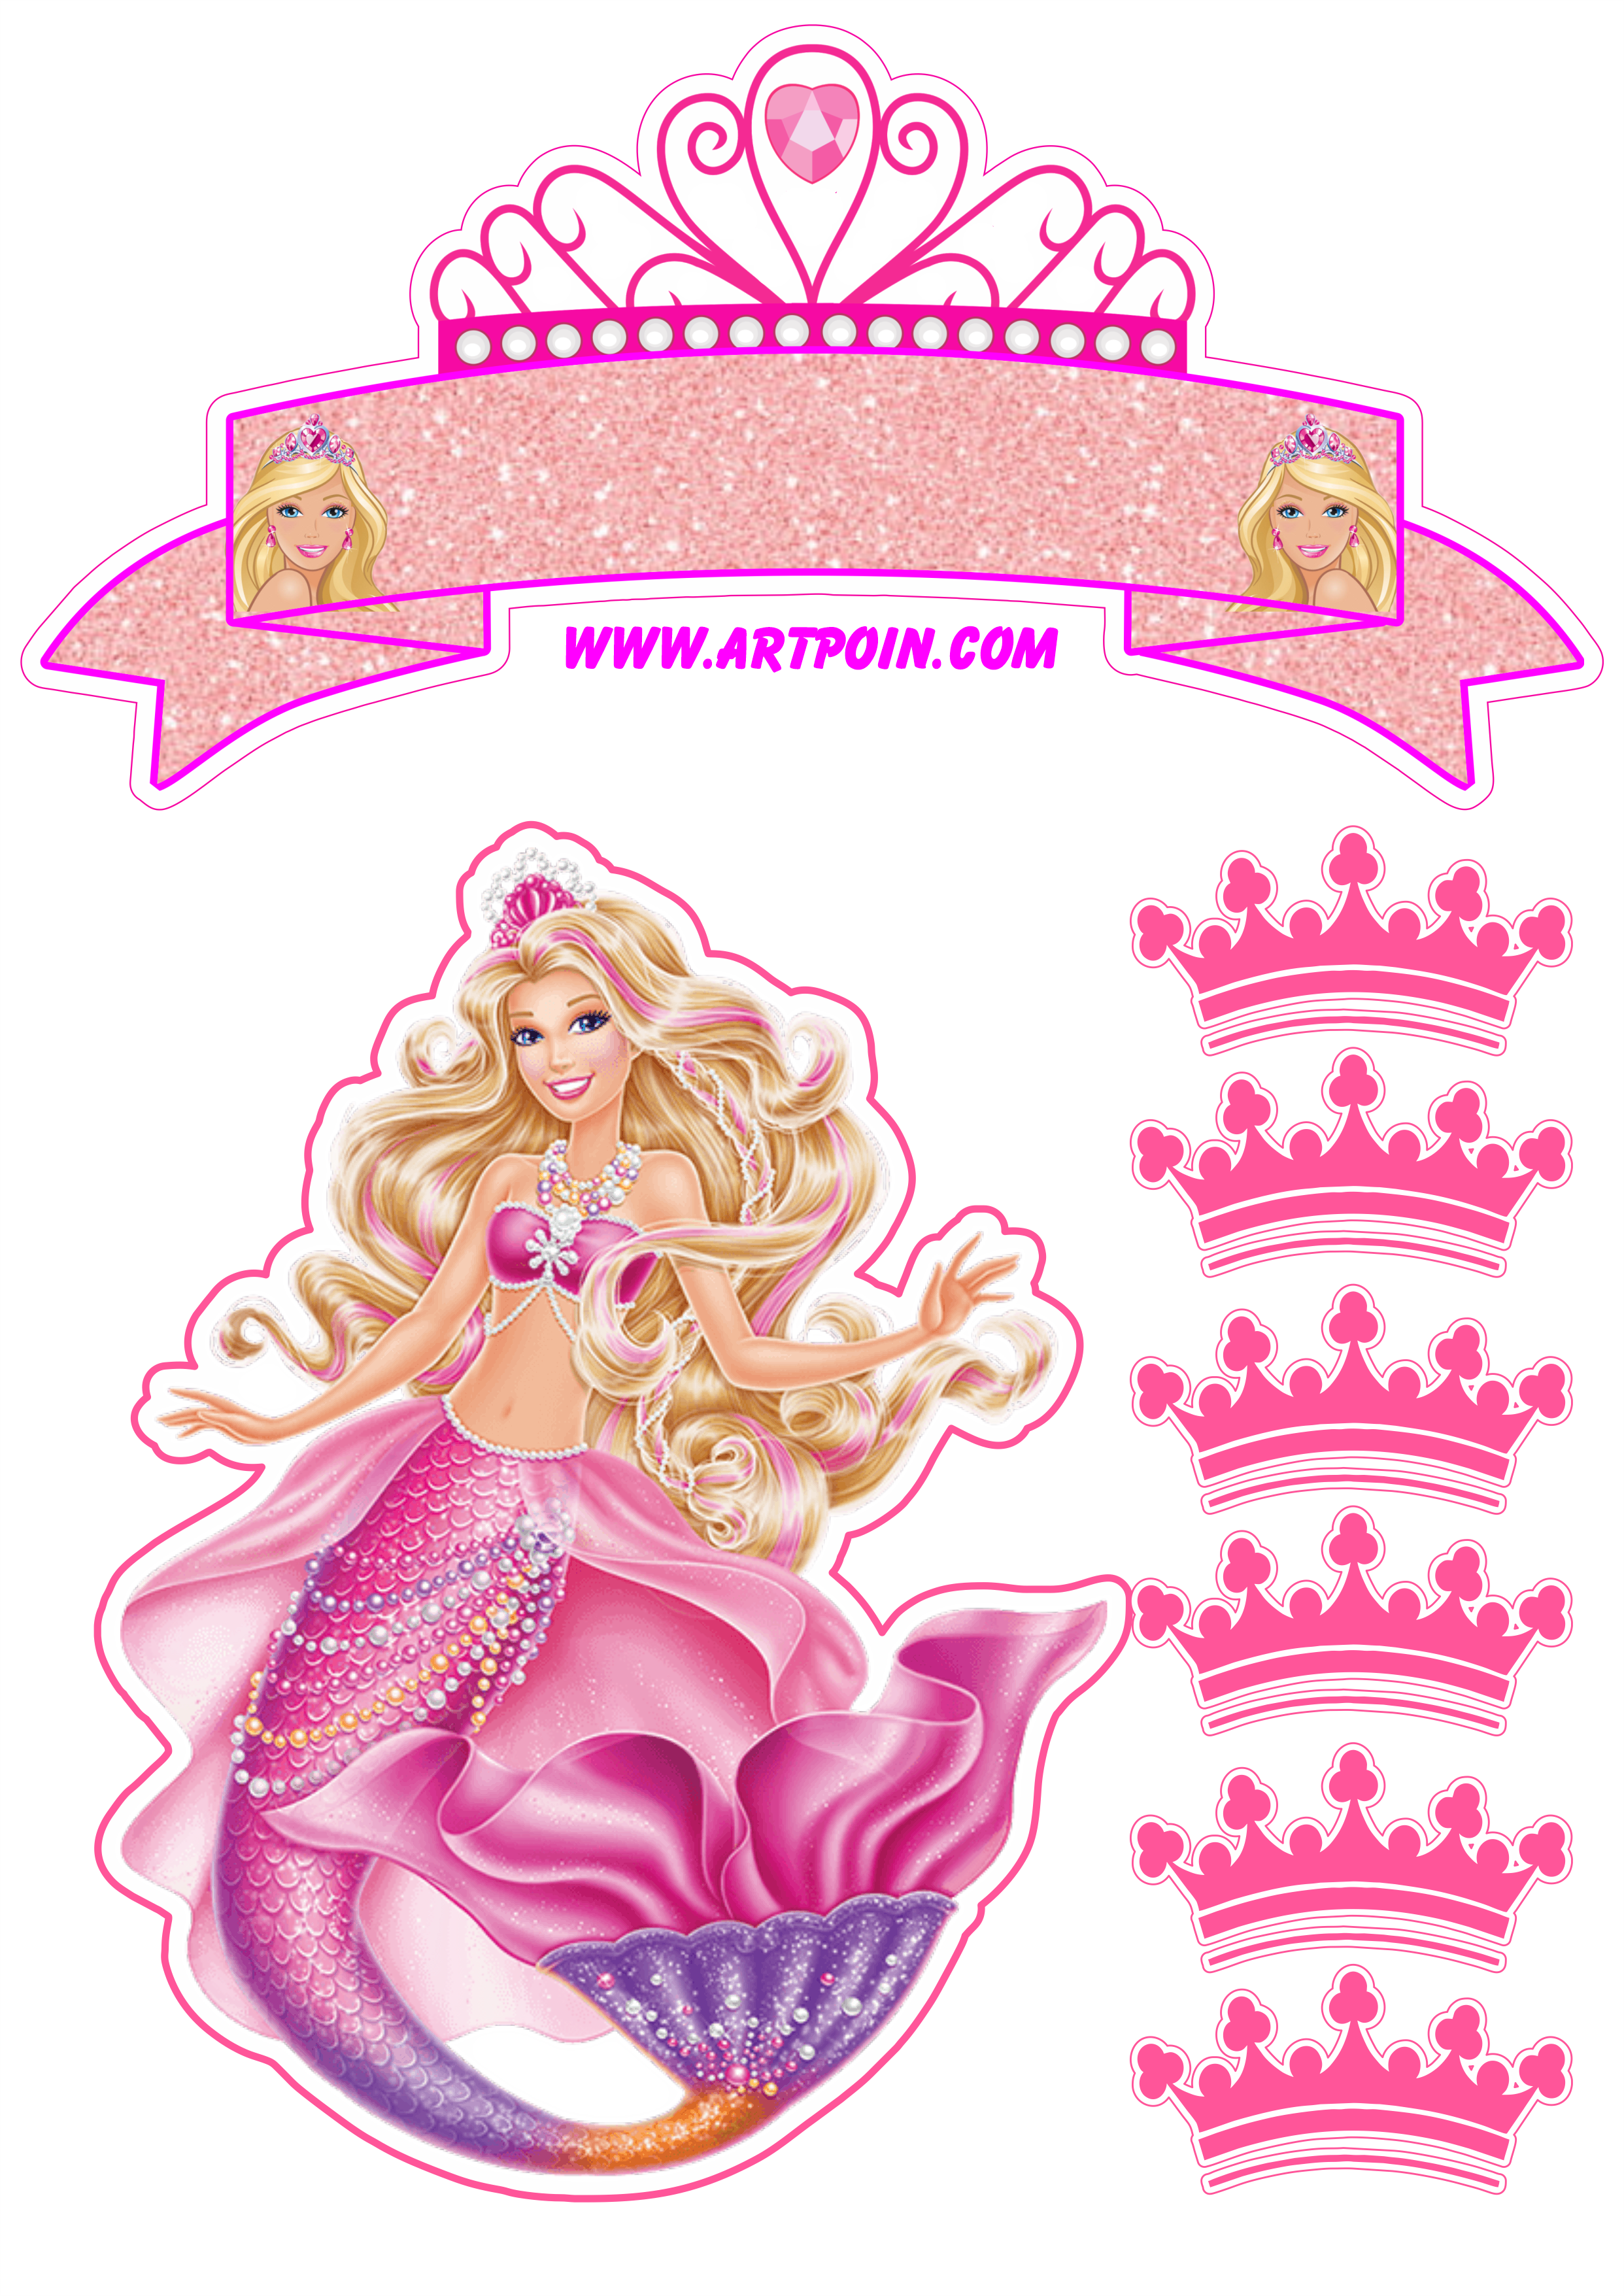 Bolo da Barbie: modelos da sereia, princesa, girl e muito mais